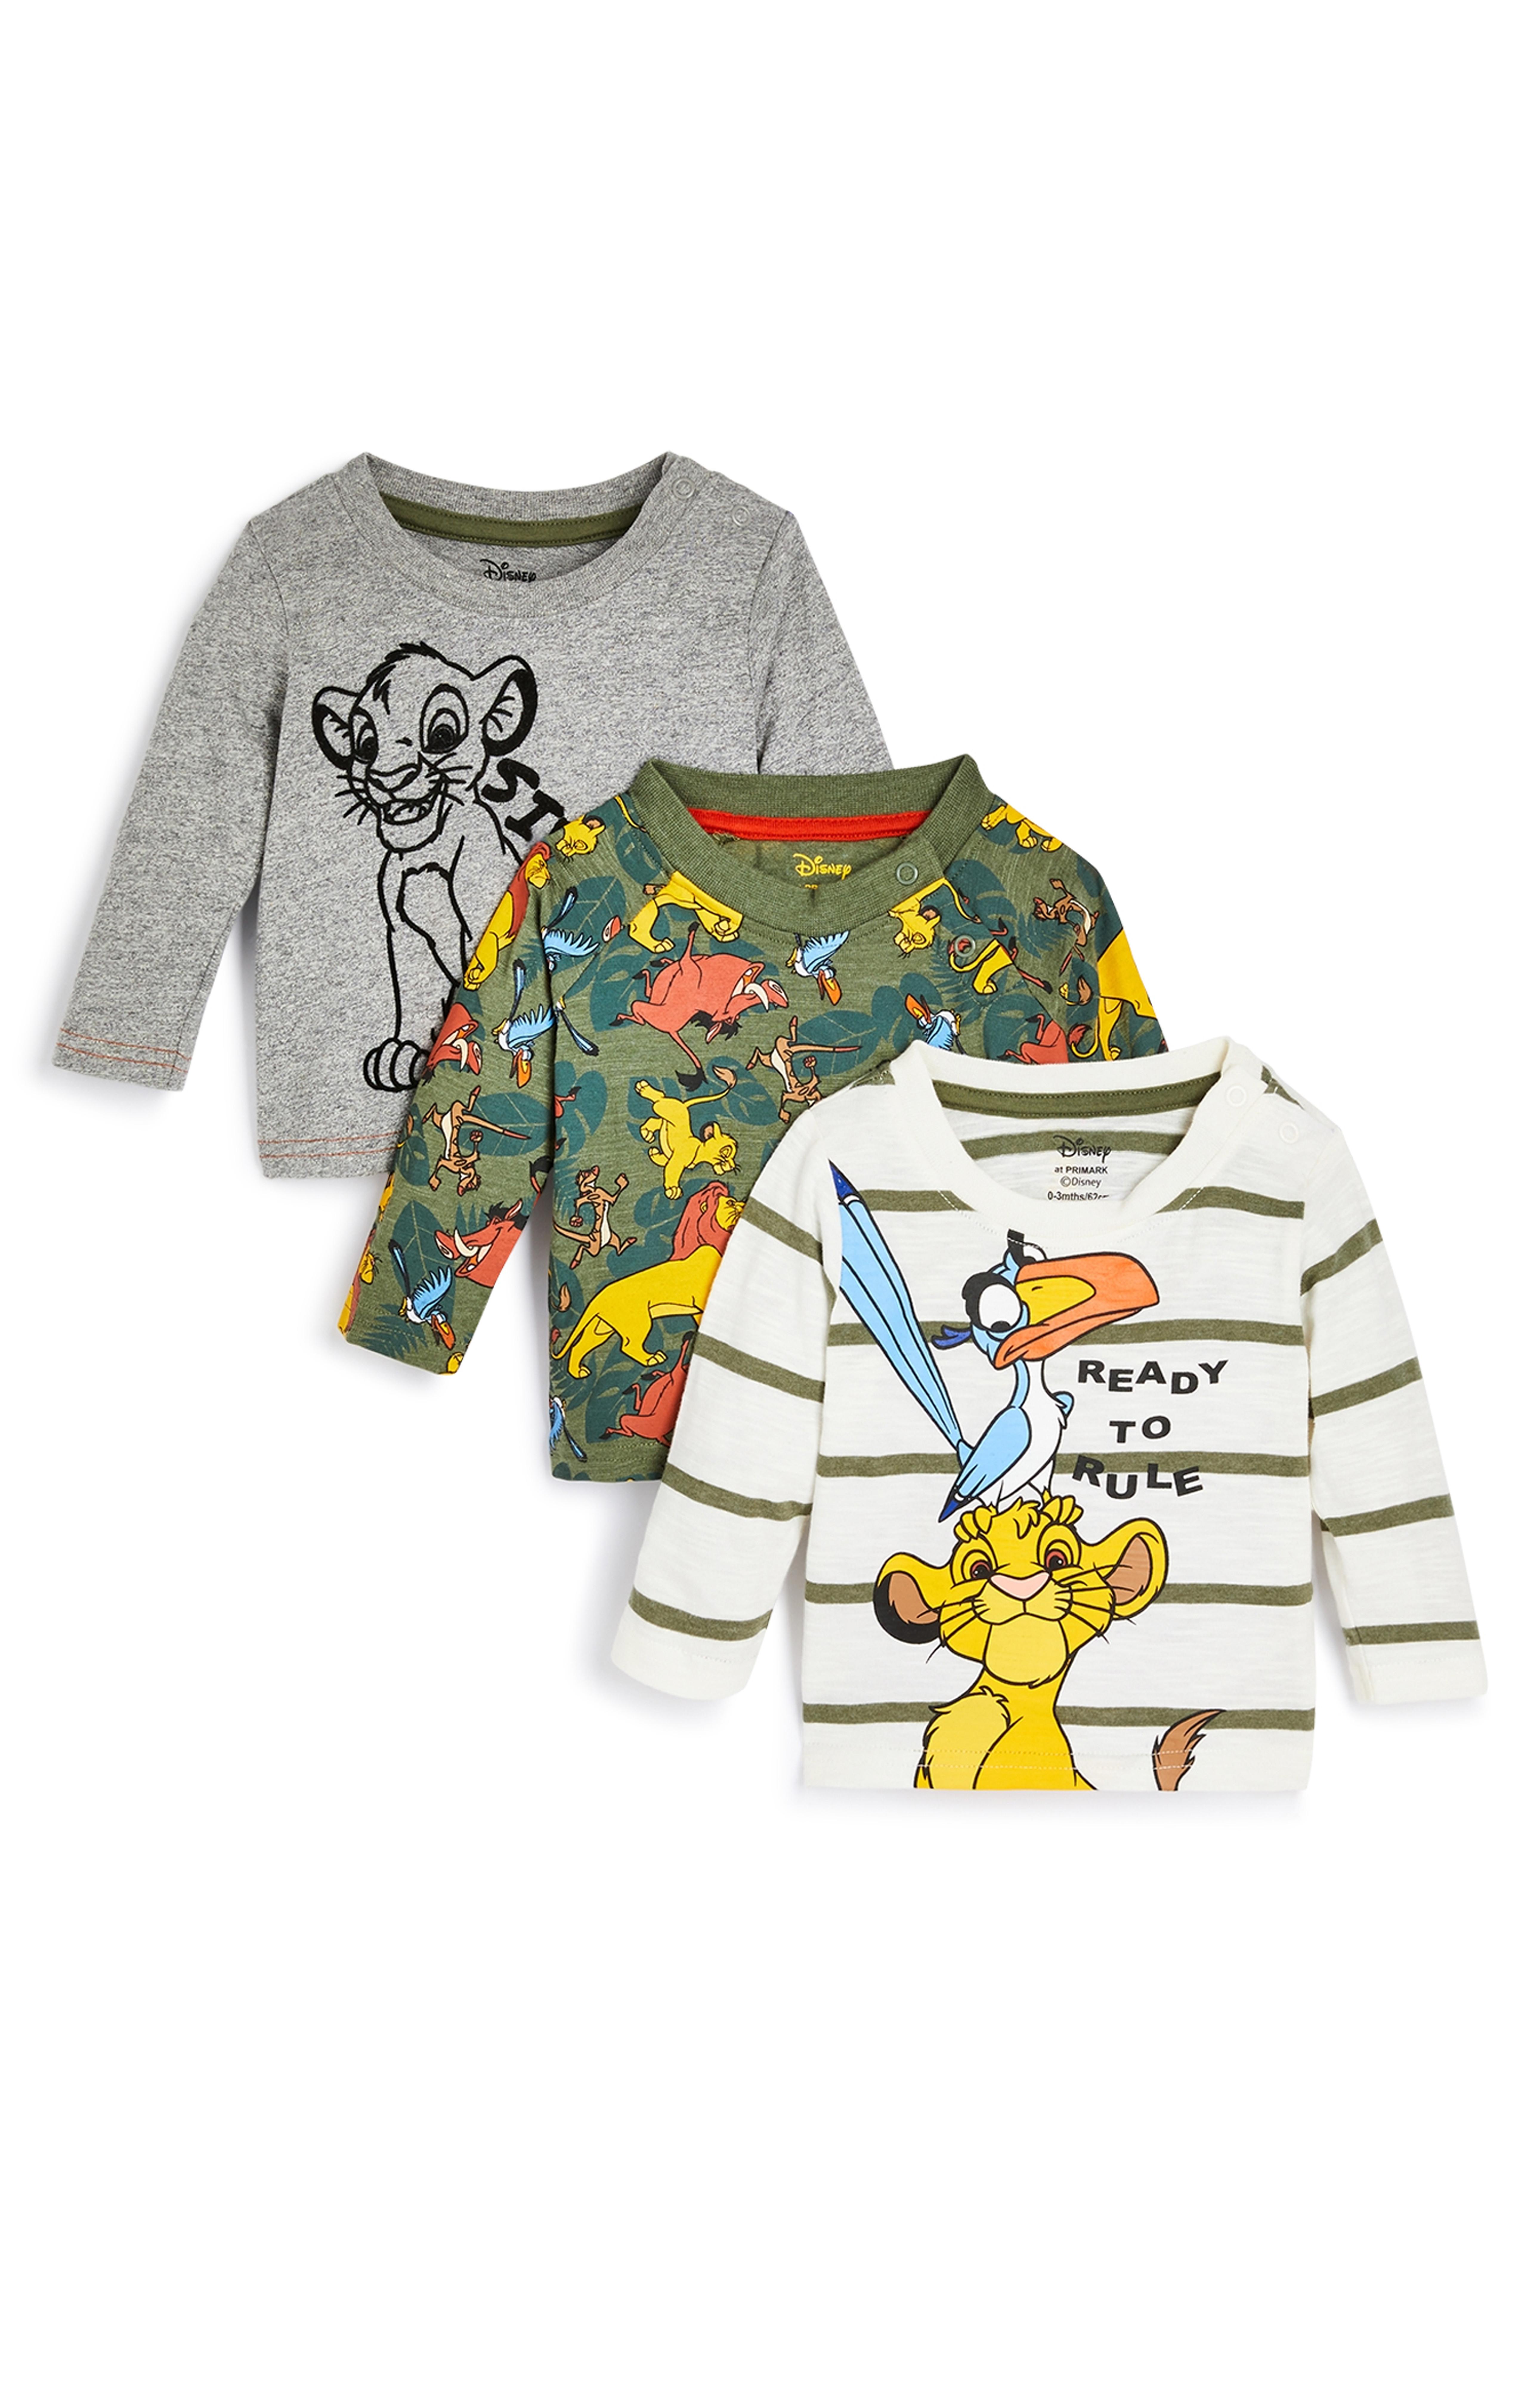 Baby-T-shirt Lion King met lange mouwen voor jongens, set van 3 | Babykleding | Kleding voor baby's en pasgeborenen | | Primark-producten | Primark Nederlands